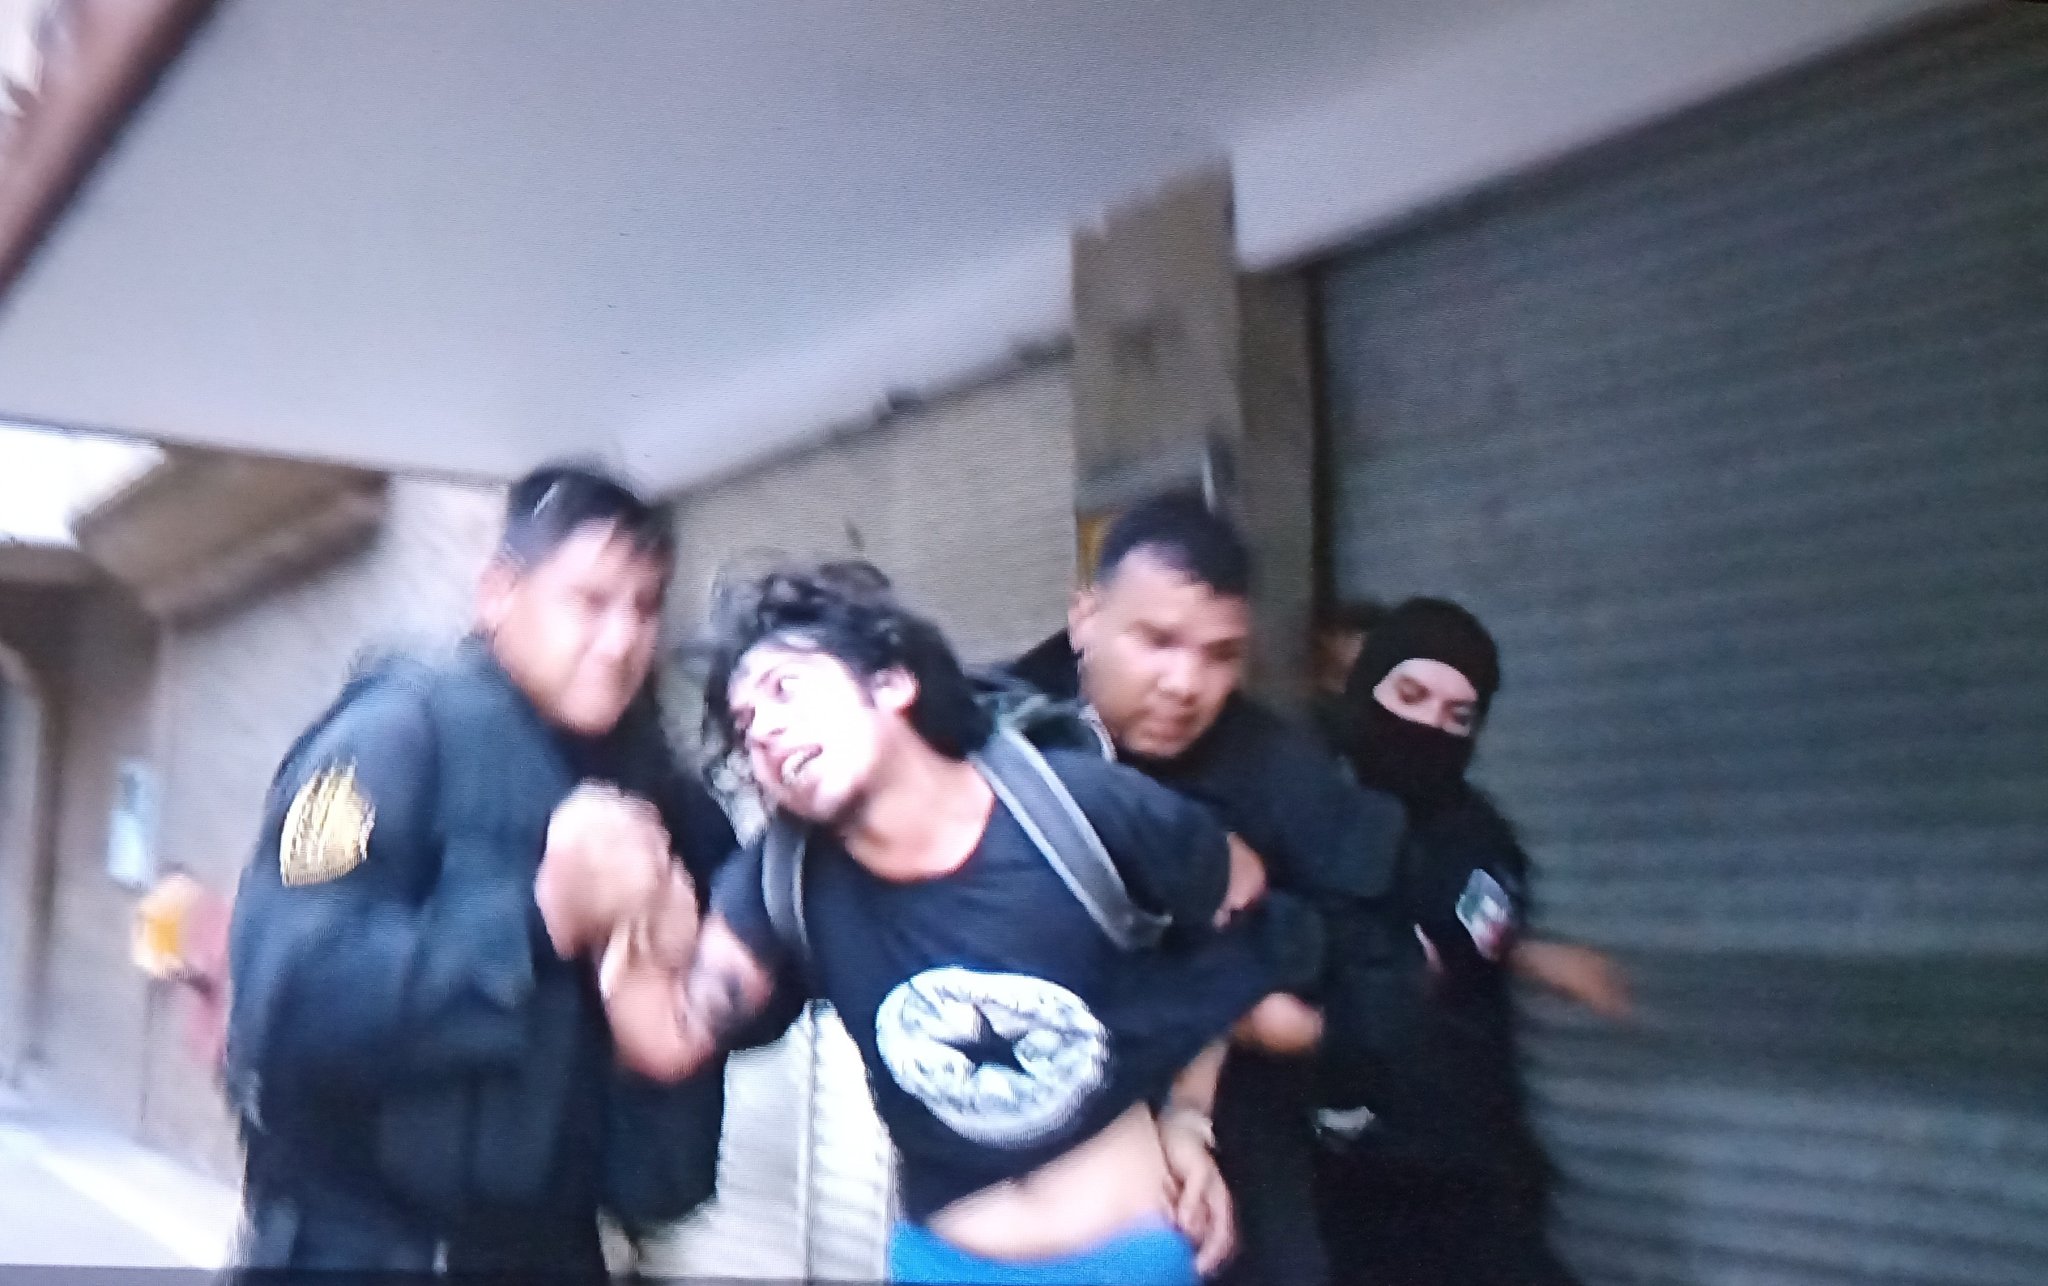 Salen a protestar por Giovanni López: Policía los reprime